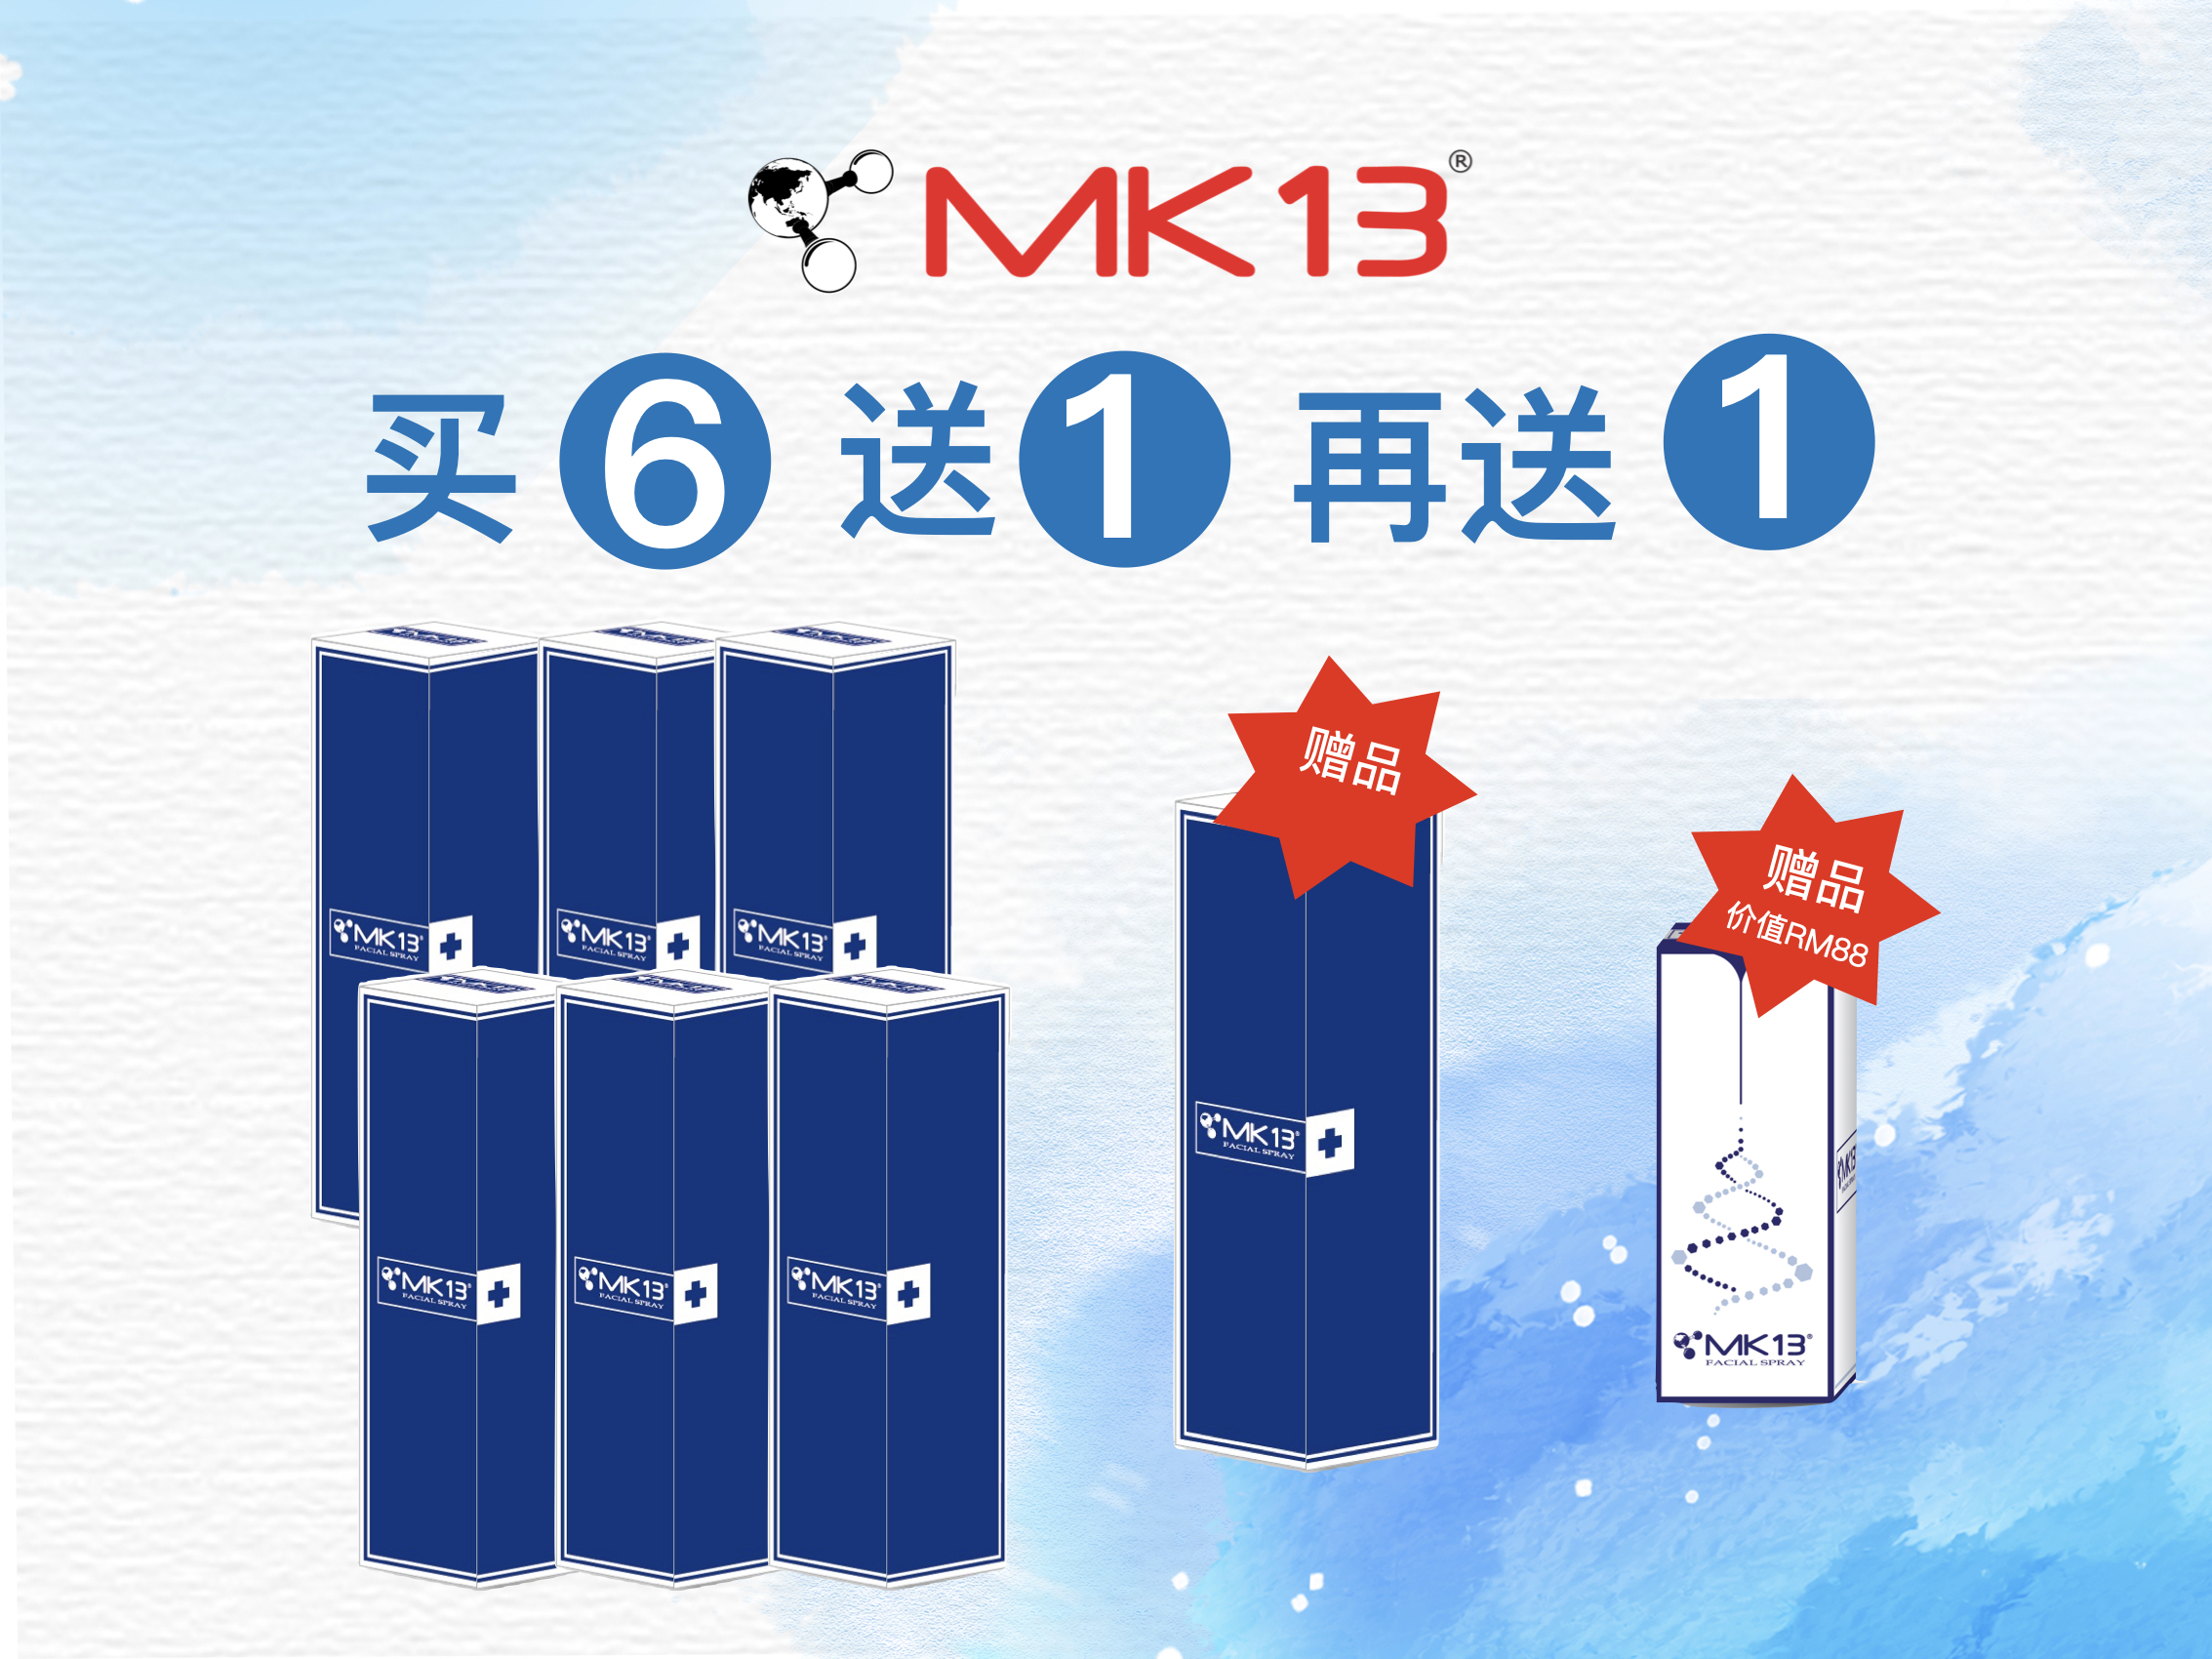 MK13 (4th) – 6